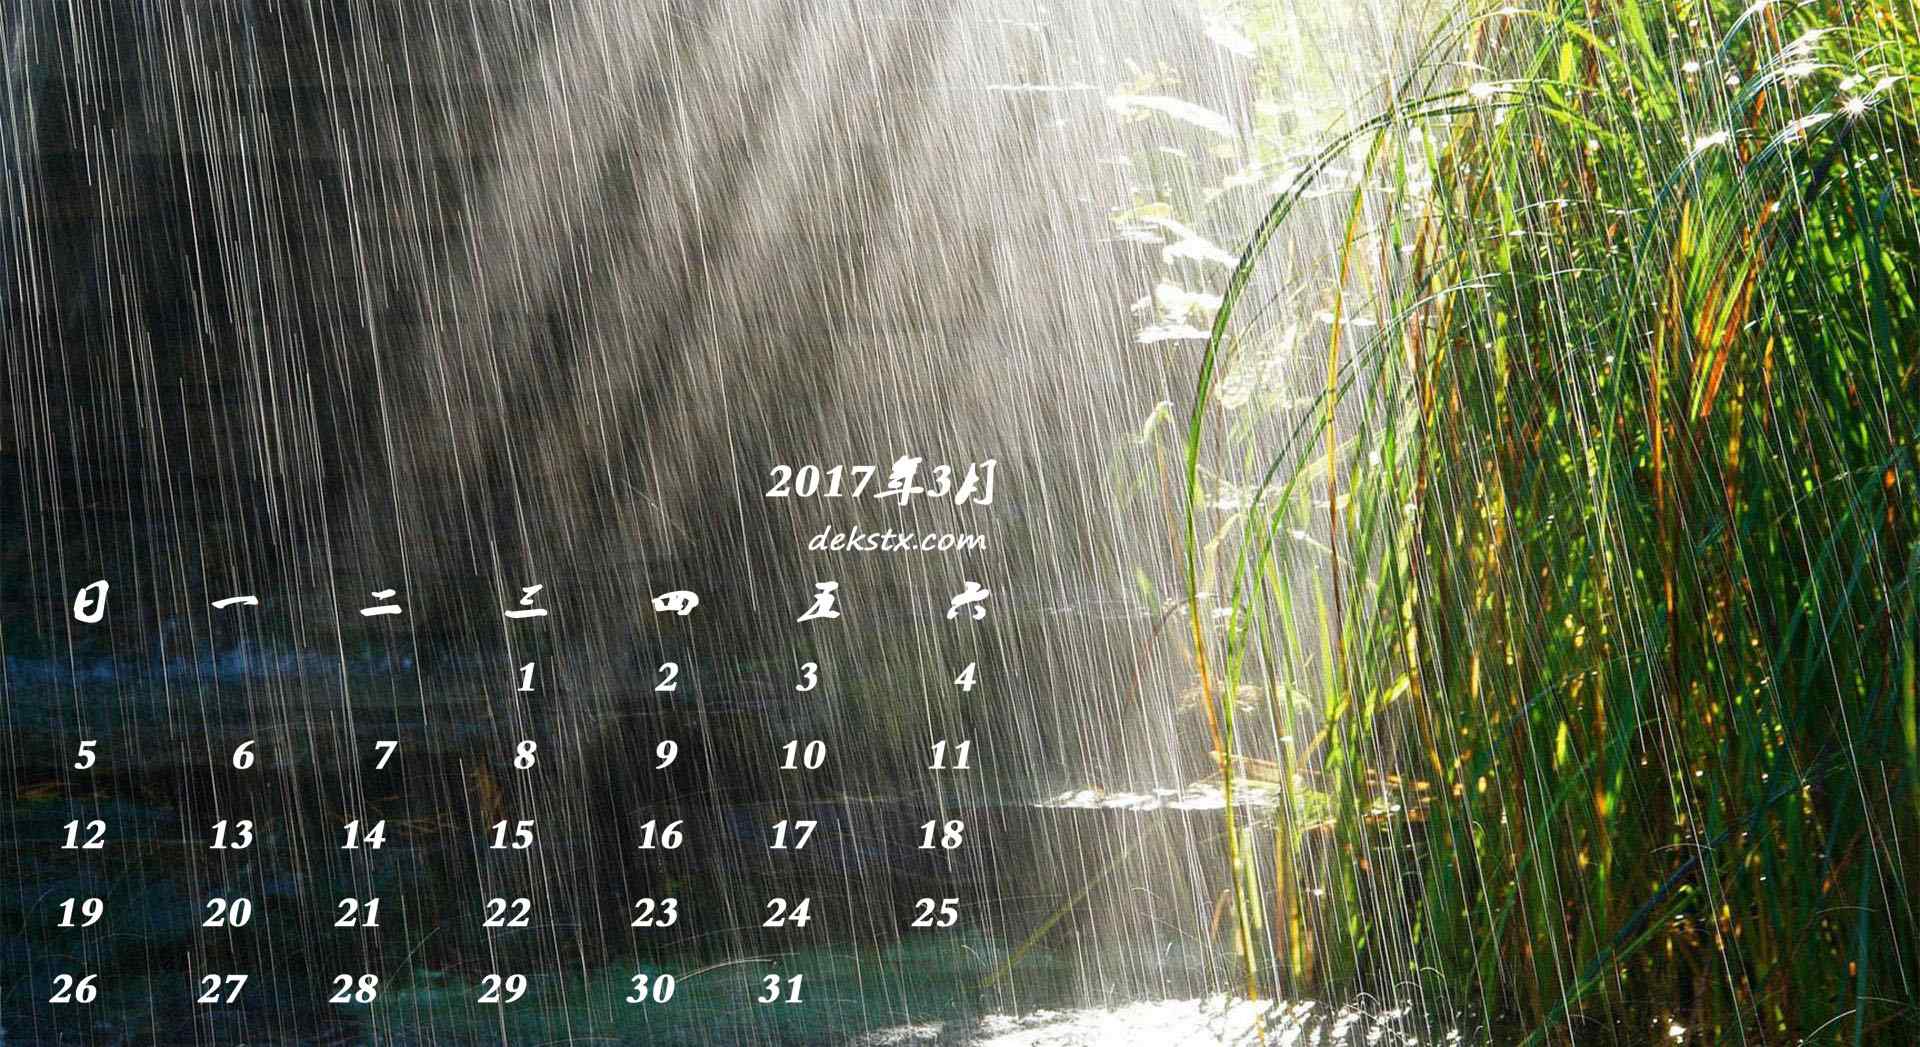 2017年3月日历自然风景壁纸